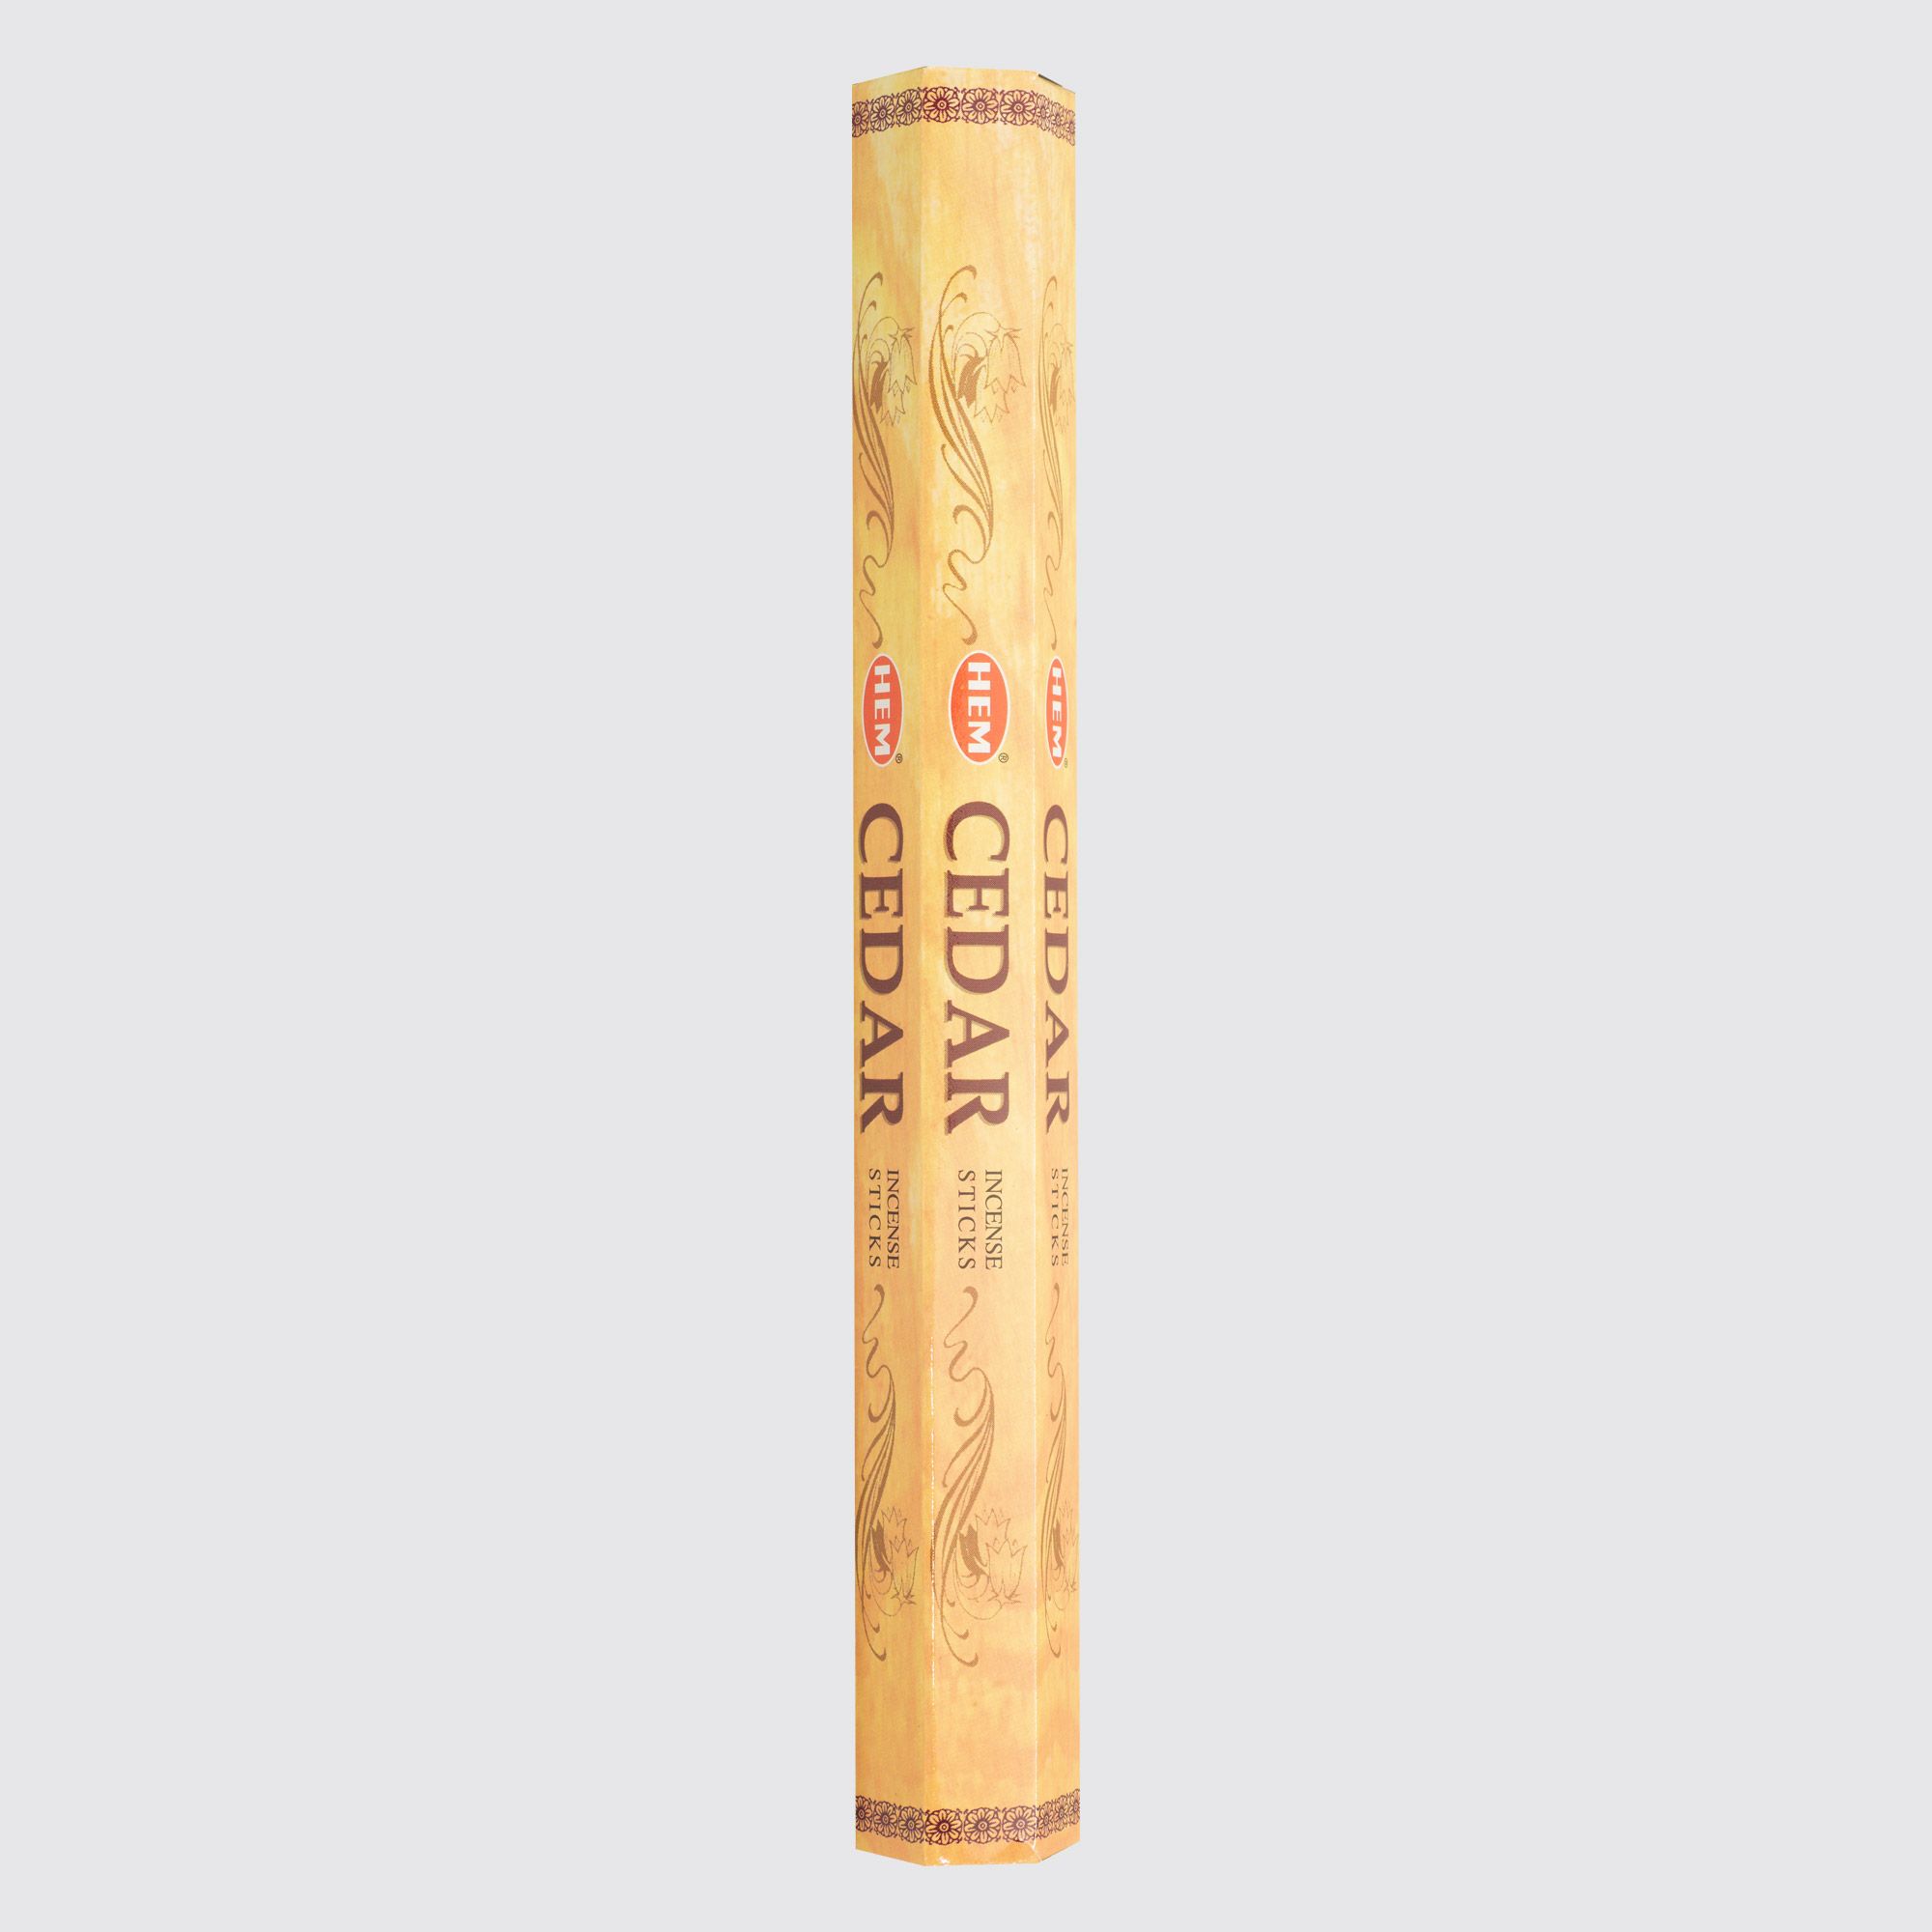  HEM® Cedar Hexa Incense Sticks #54414